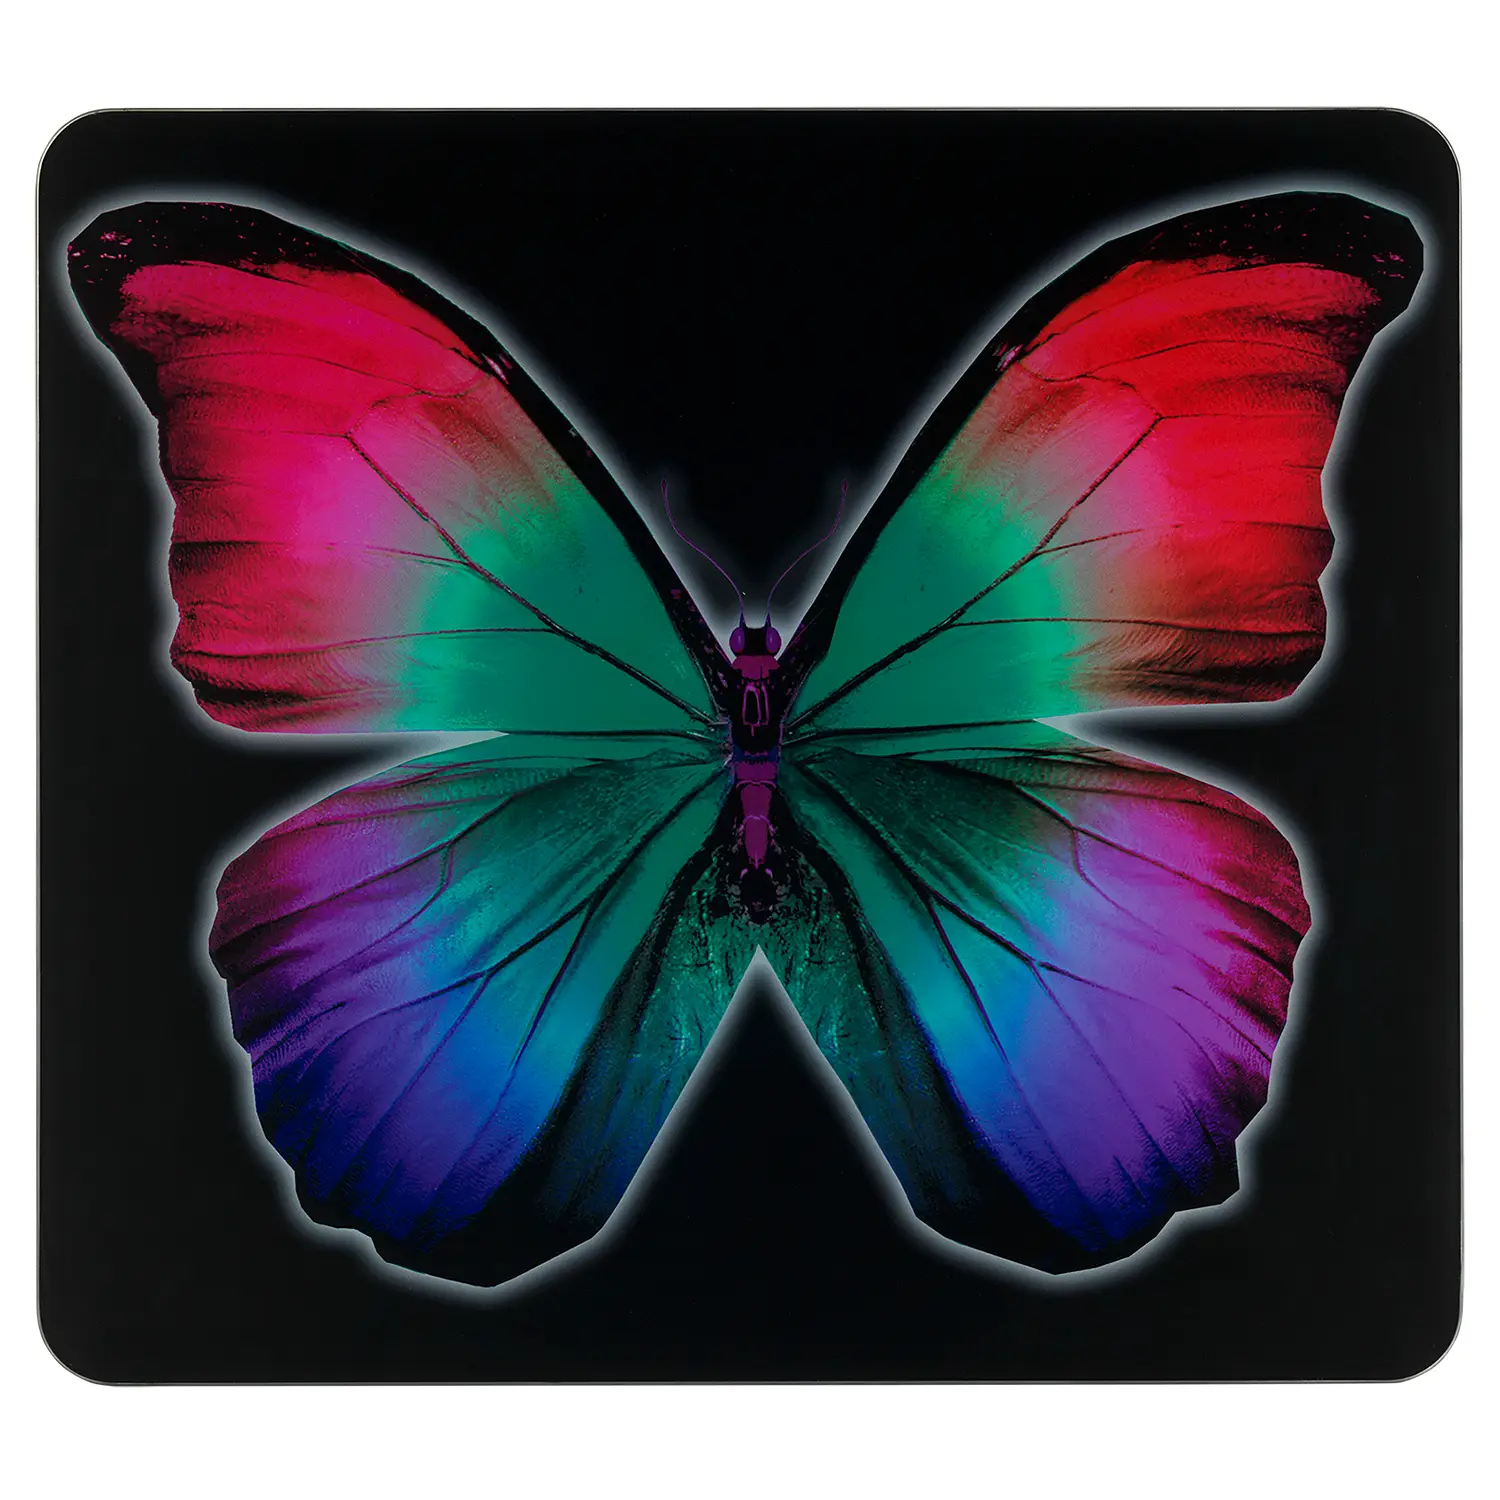 Multi-Platte Butterfly by Night